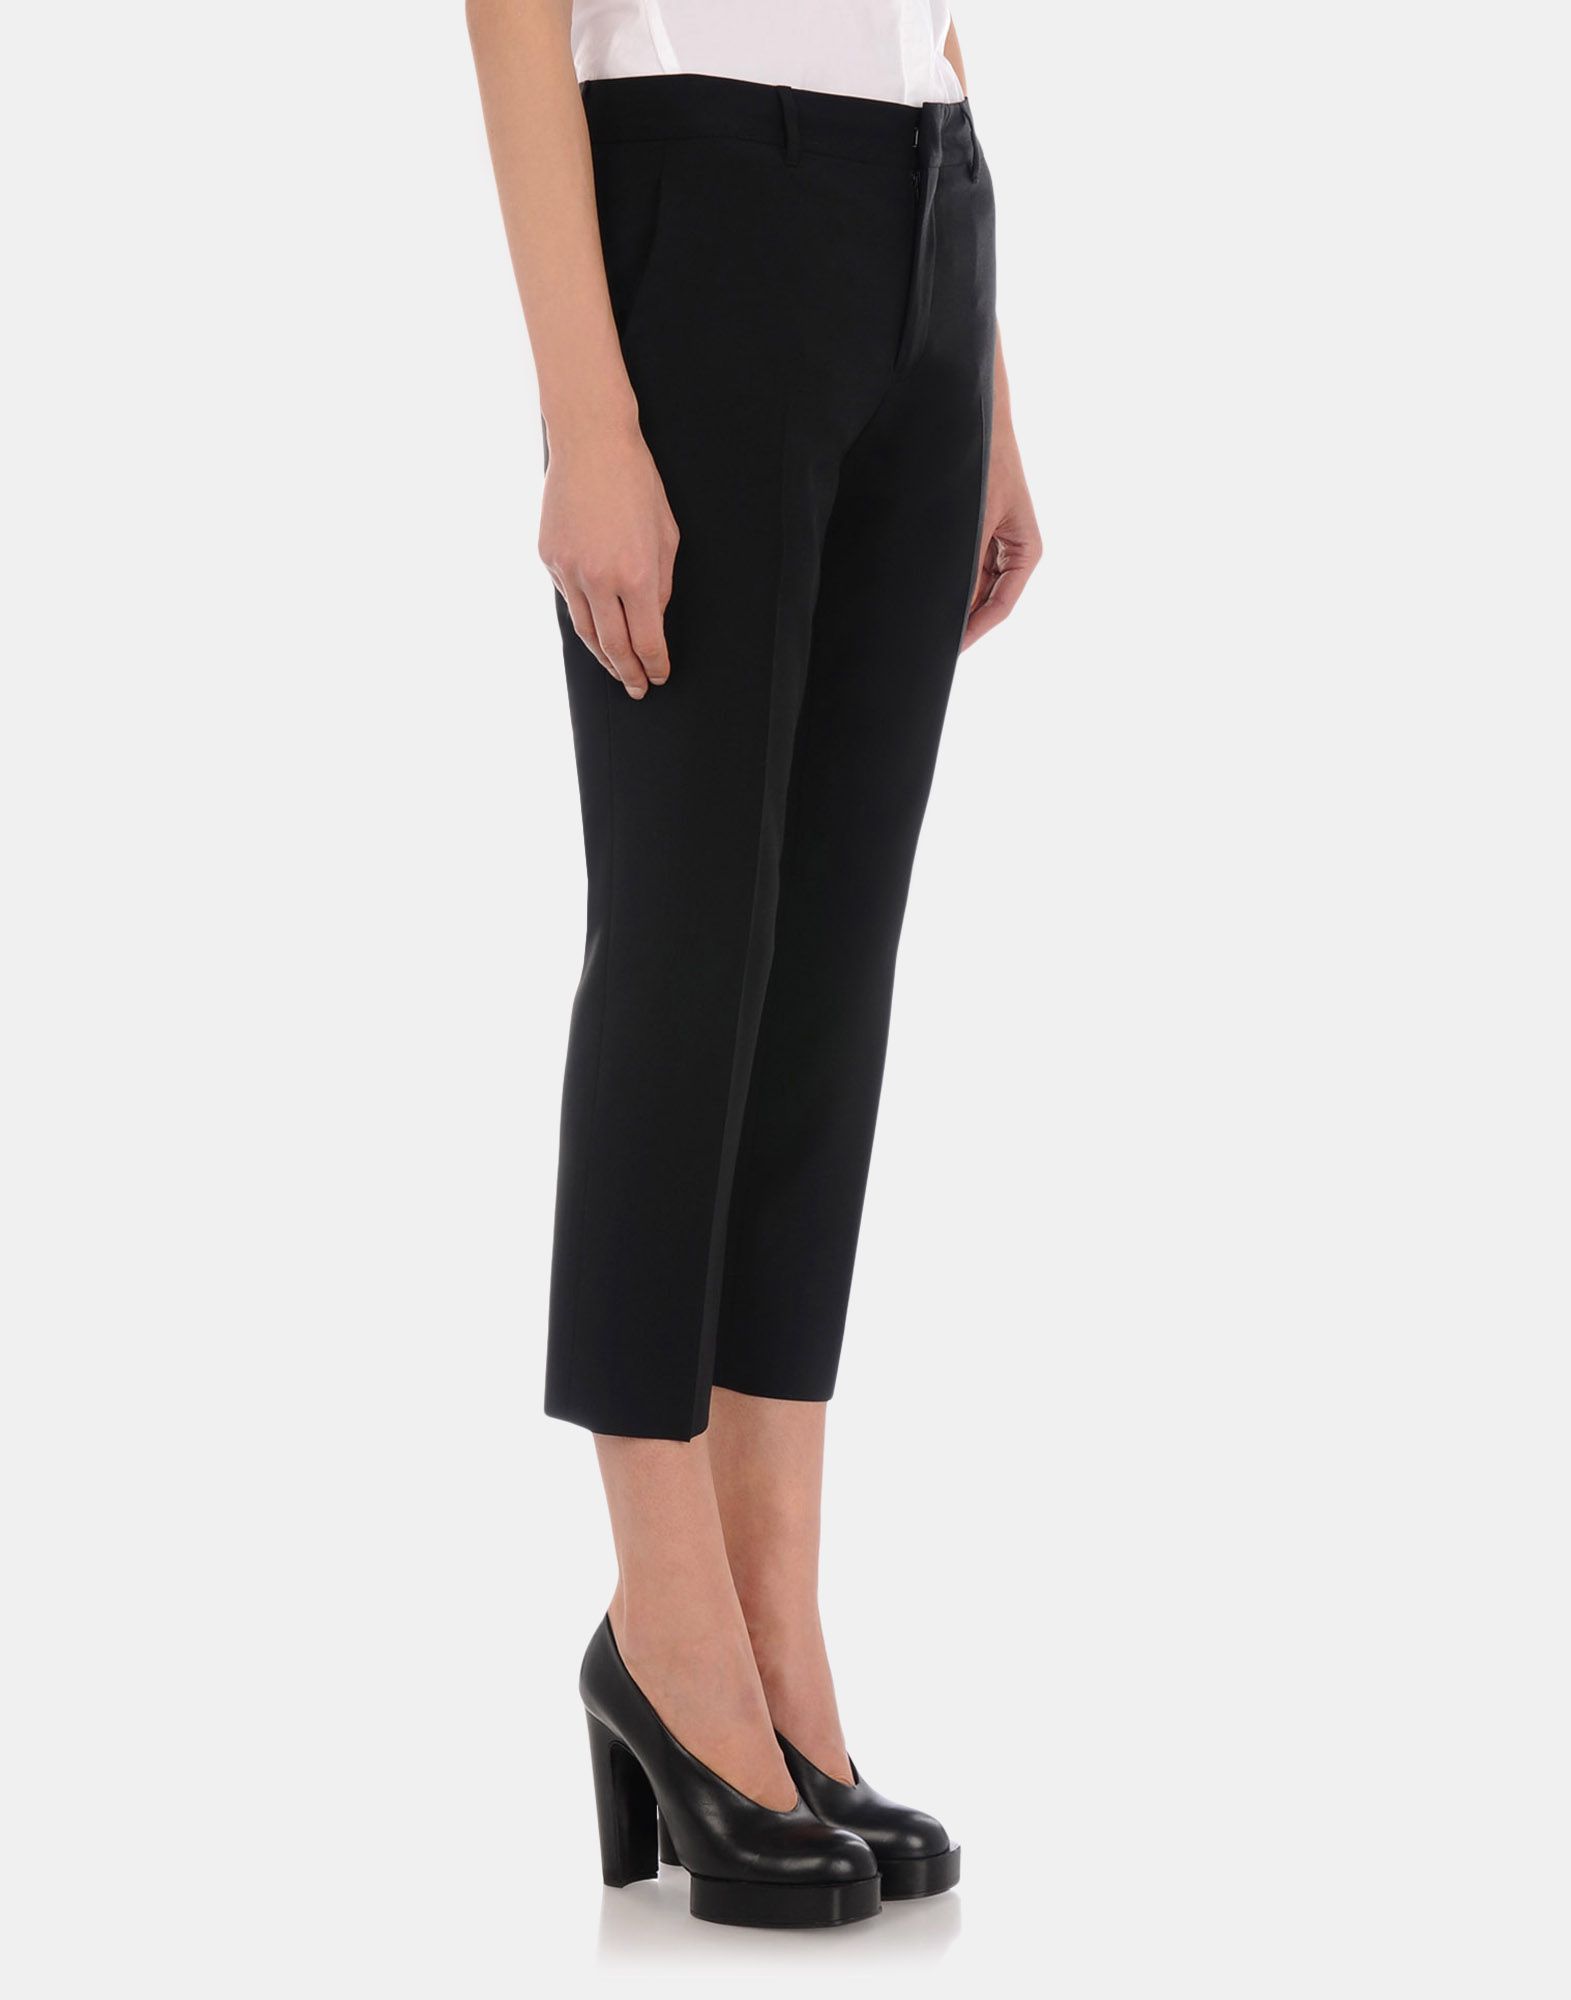 Tailored pants Women - Pants Women on Jil Sander Online Store